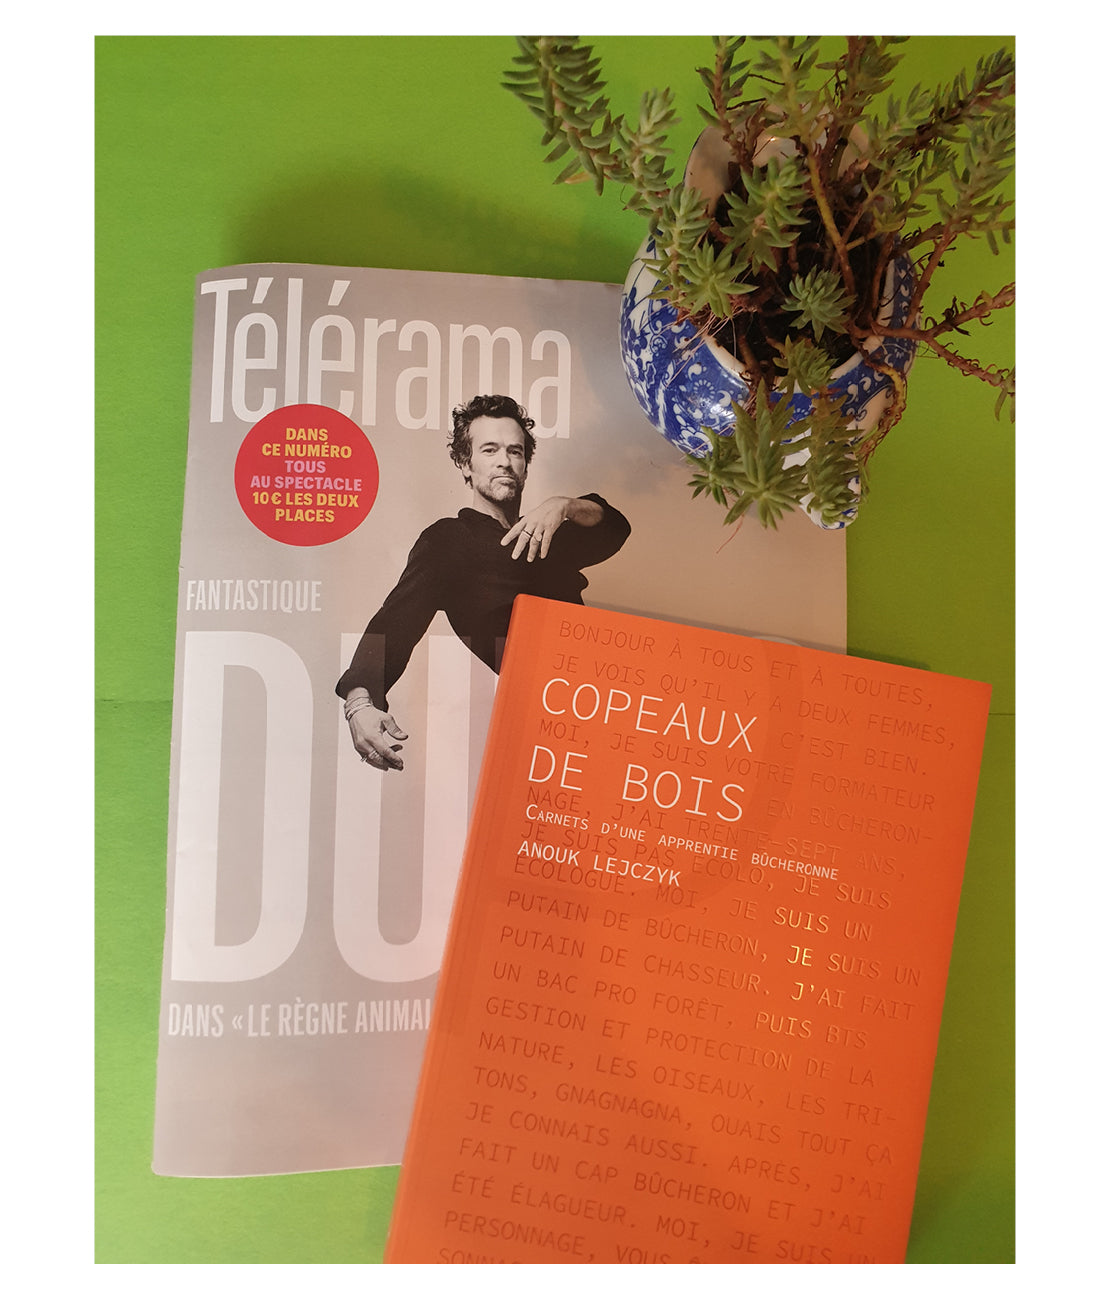 Le livre Copeaux de bois d'Anouk Lejczyk sur la couverture de Telerama avec Romain Duris